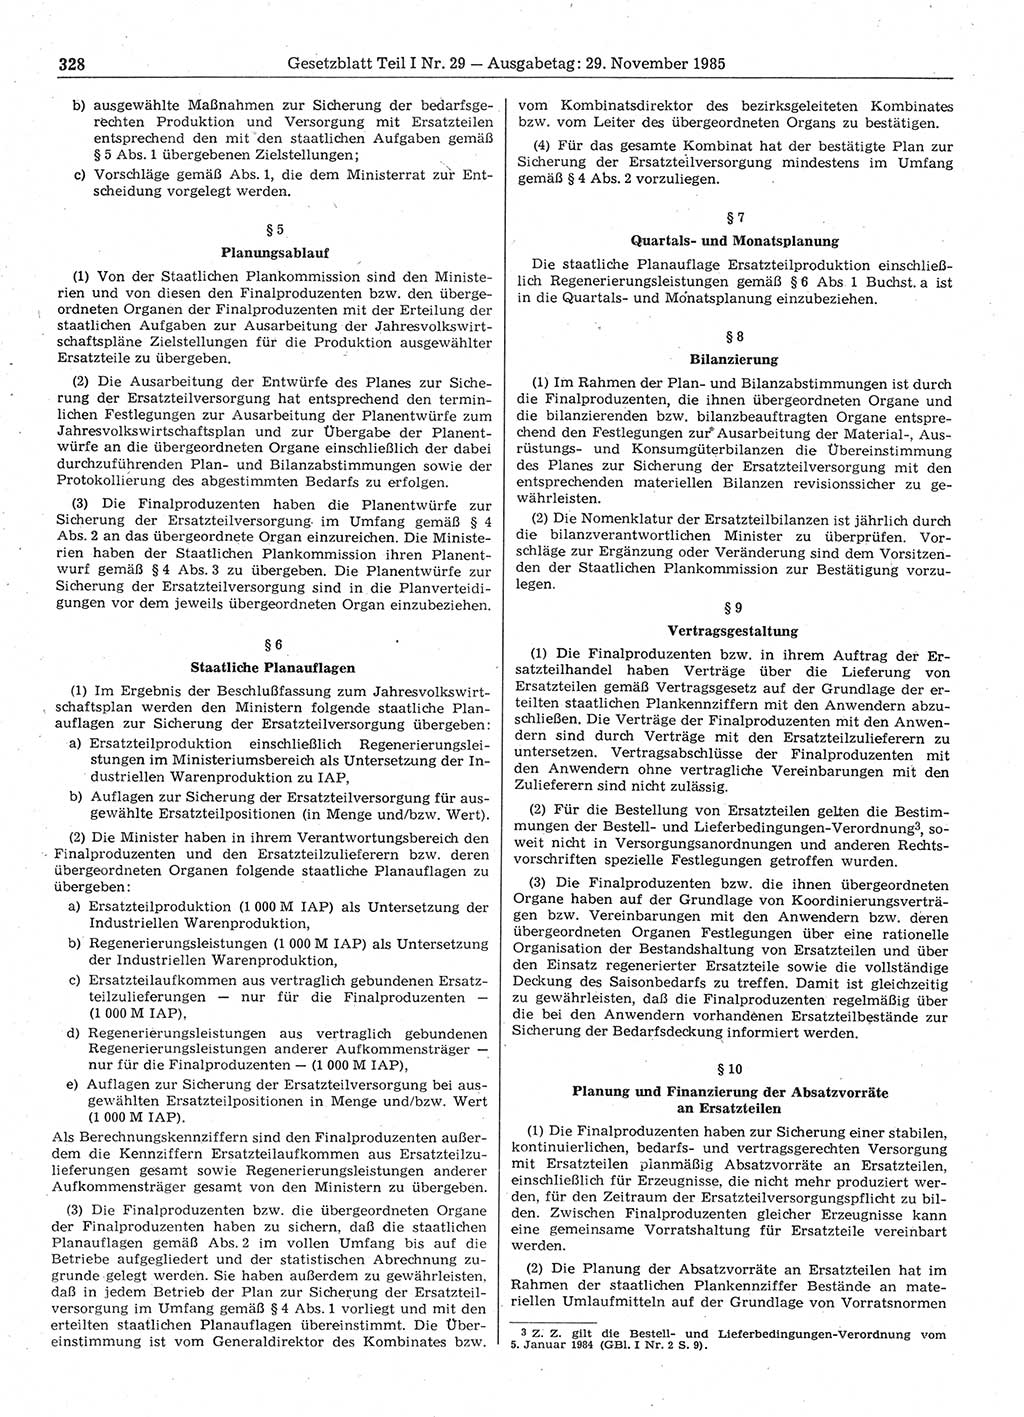 Gesetzblatt (GBl.) der Deutschen Demokratischen Republik (DDR) Teil Ⅰ 1985, Seite 328 (GBl. DDR Ⅰ 1985, S. 328)